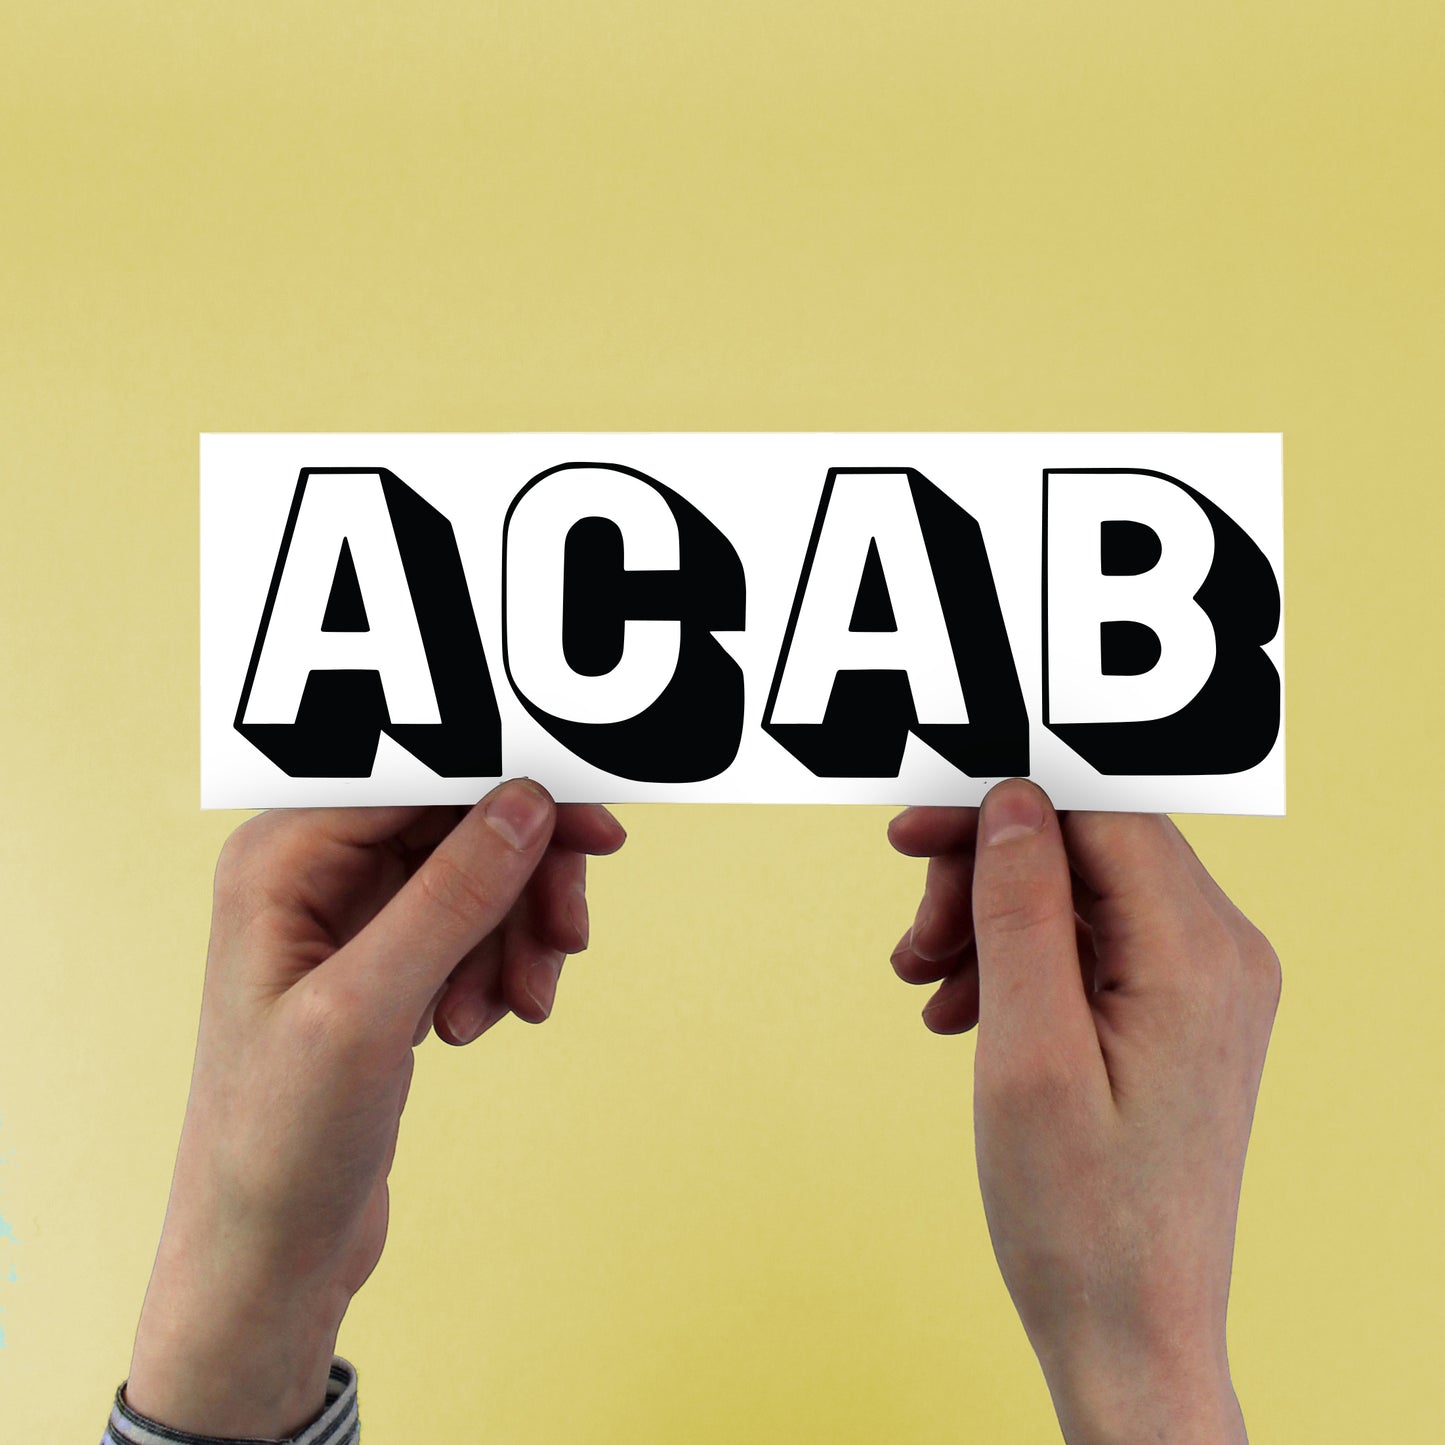 acab sticker held